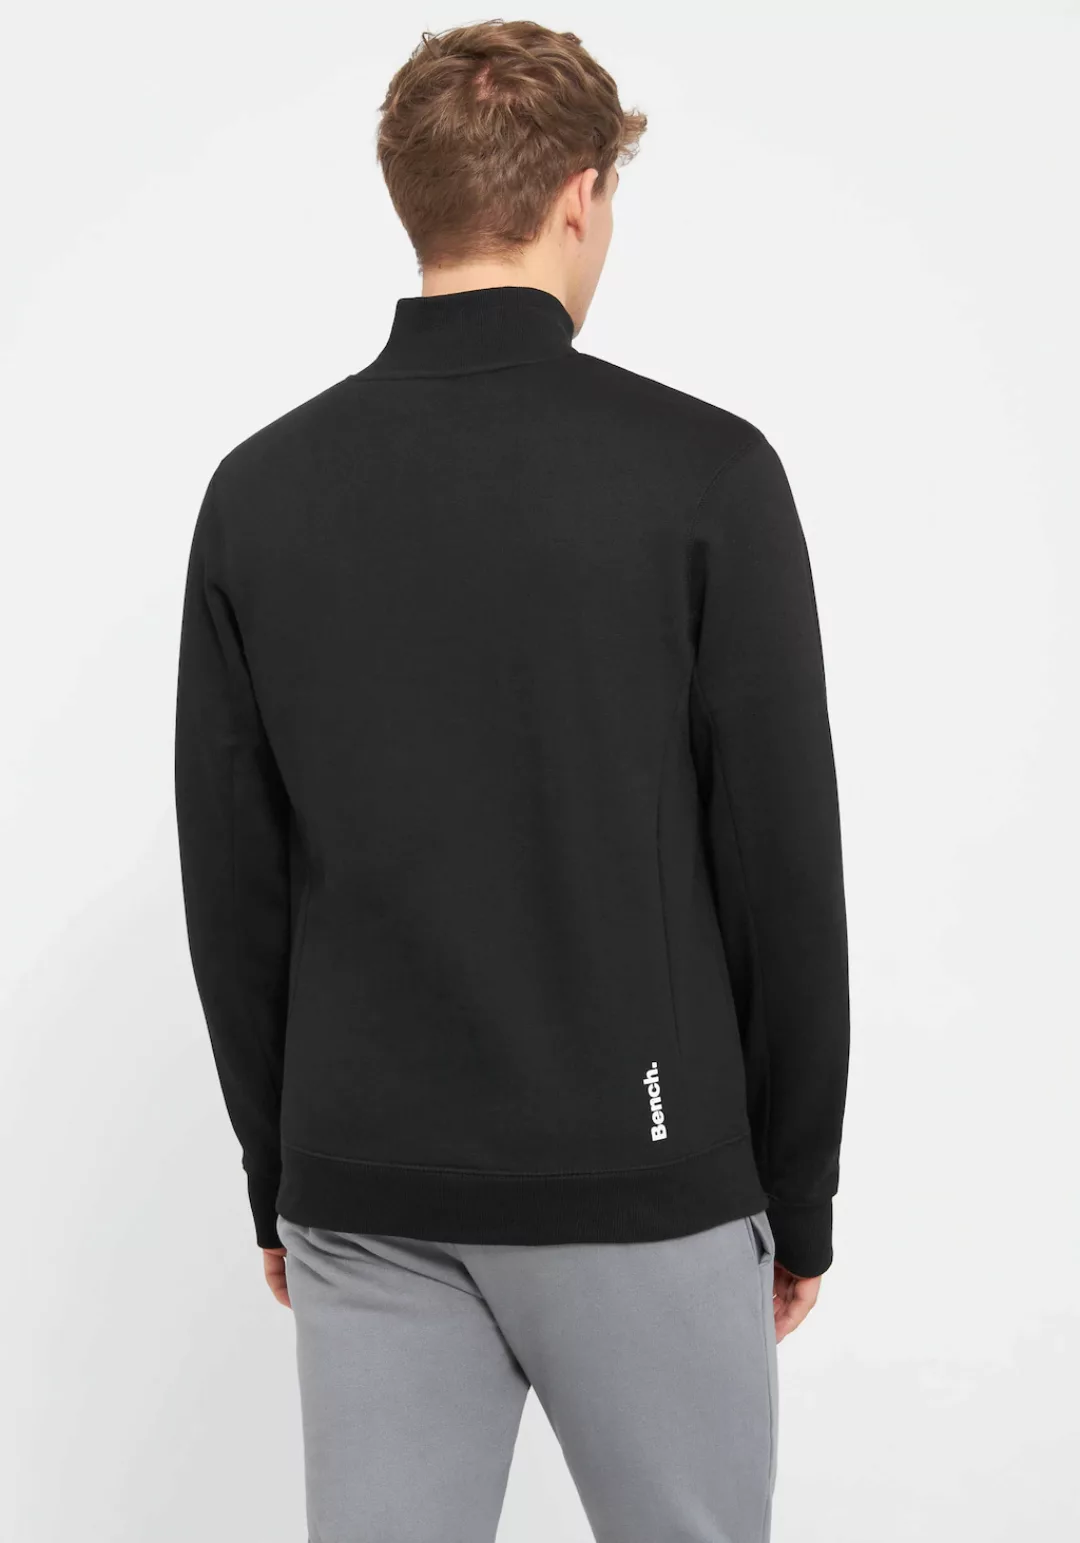 Bench. Sweatshirt "PLINTH" günstig online kaufen